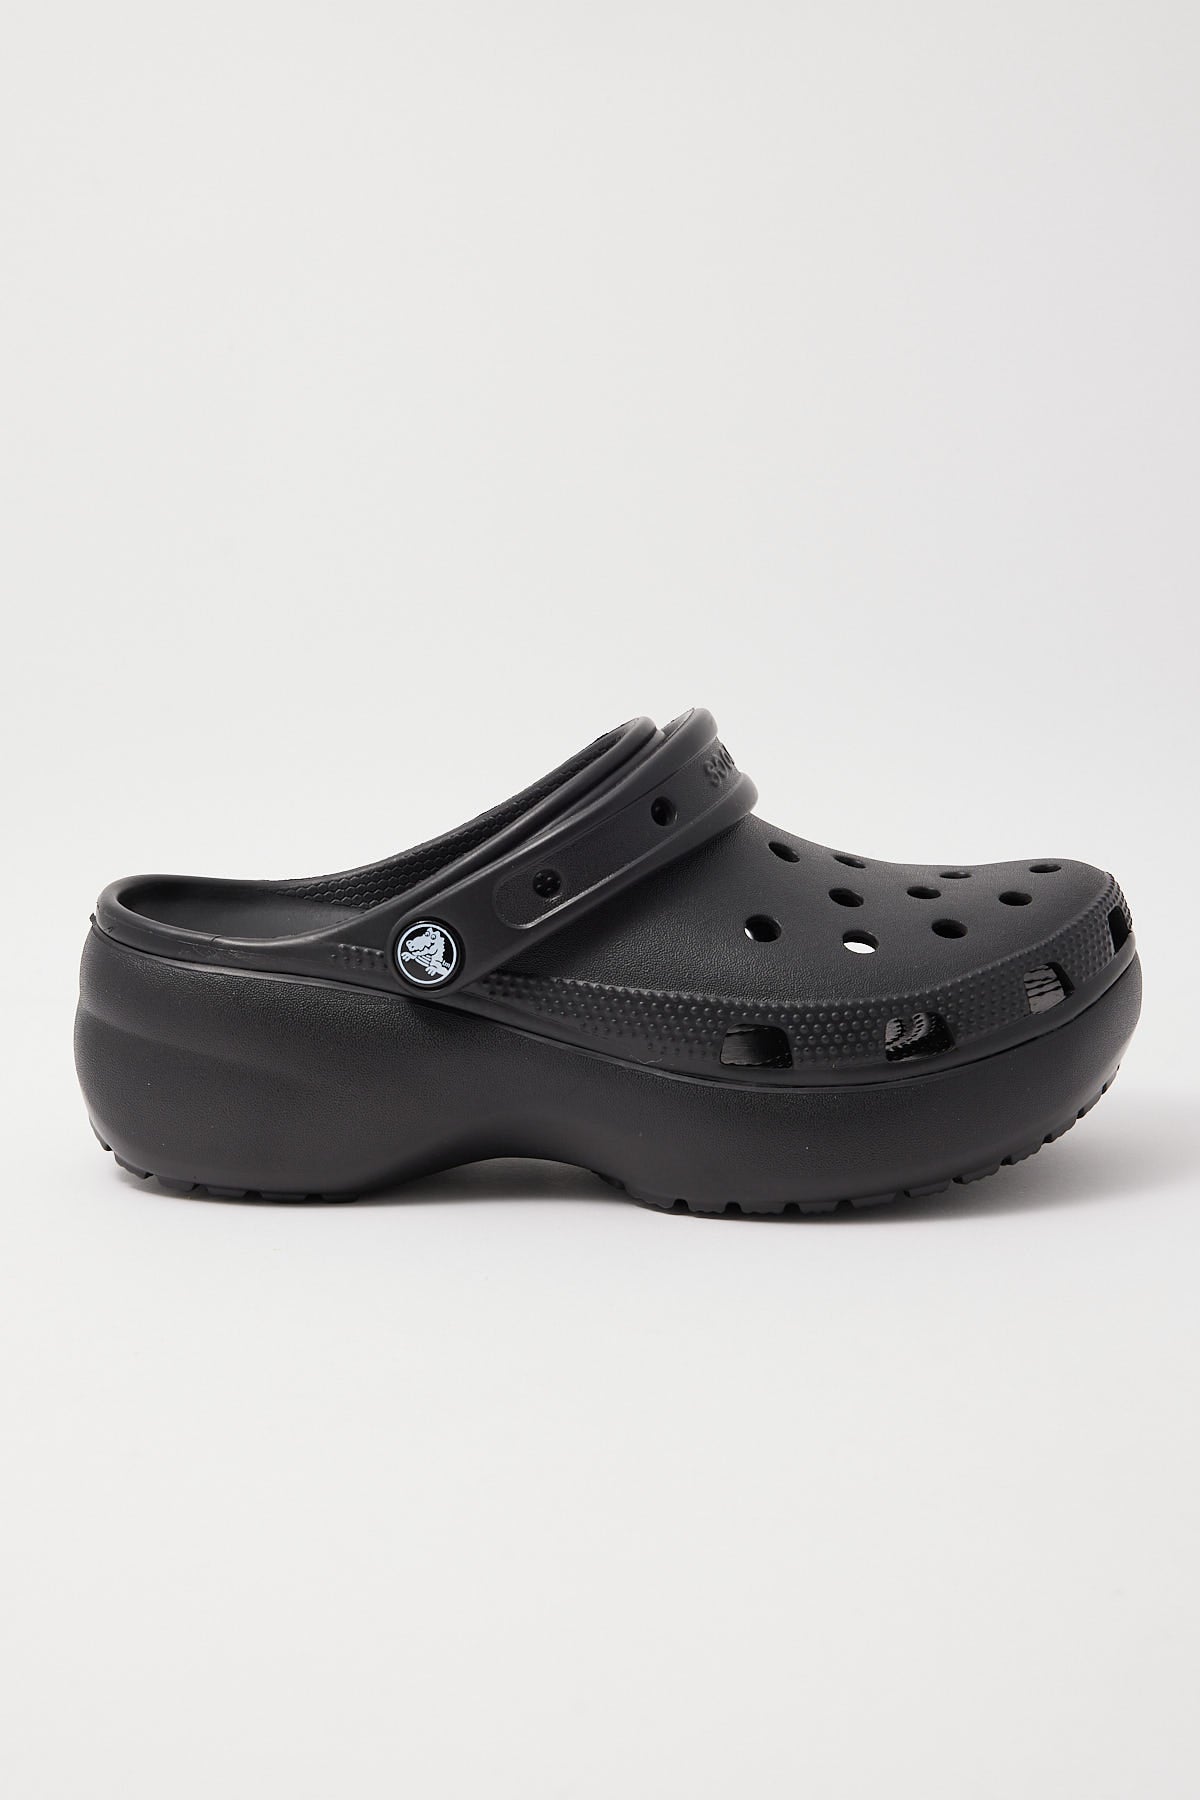 Crocs Classic Platform Black